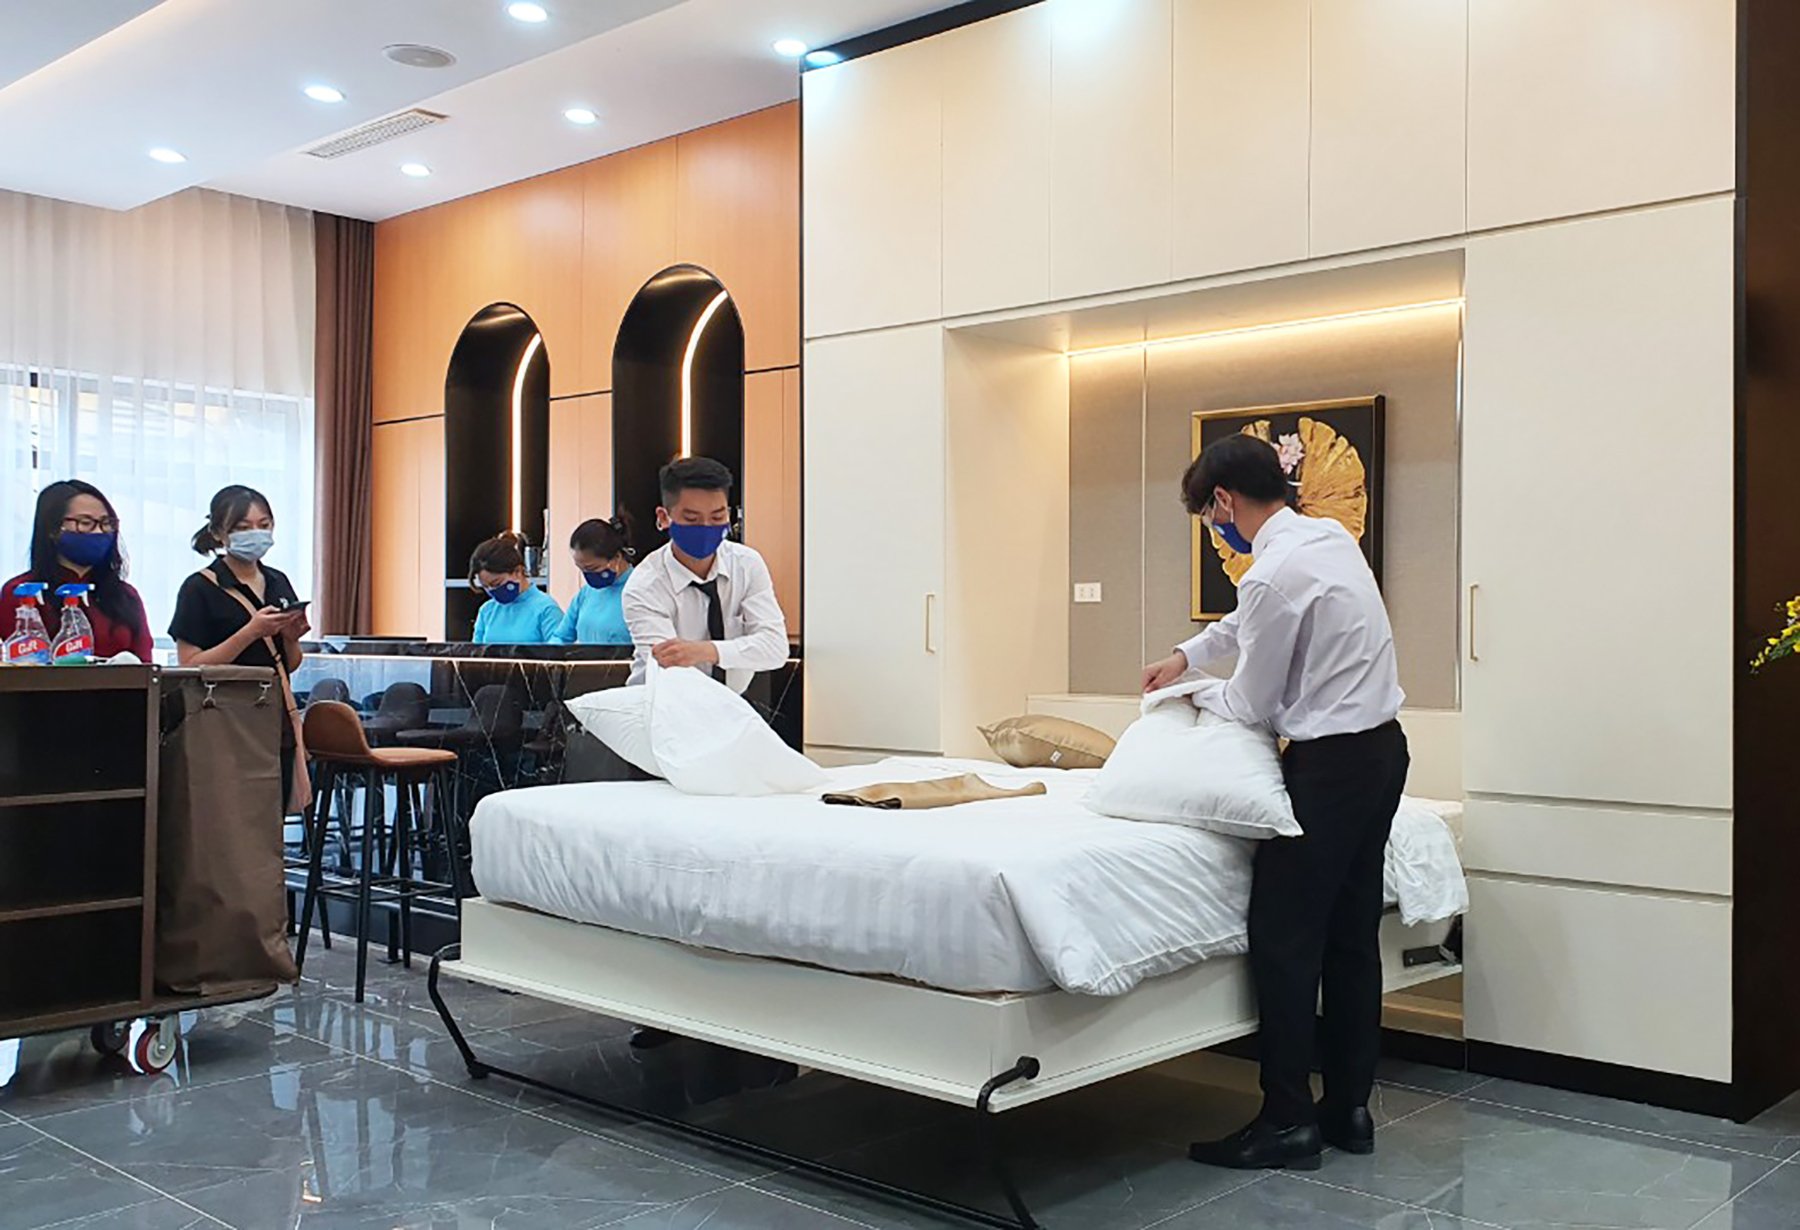 ĐH Mở Hà Nội đầu tư phòng thực hành nghiệp vụ khách sạn thông minh 5 sao